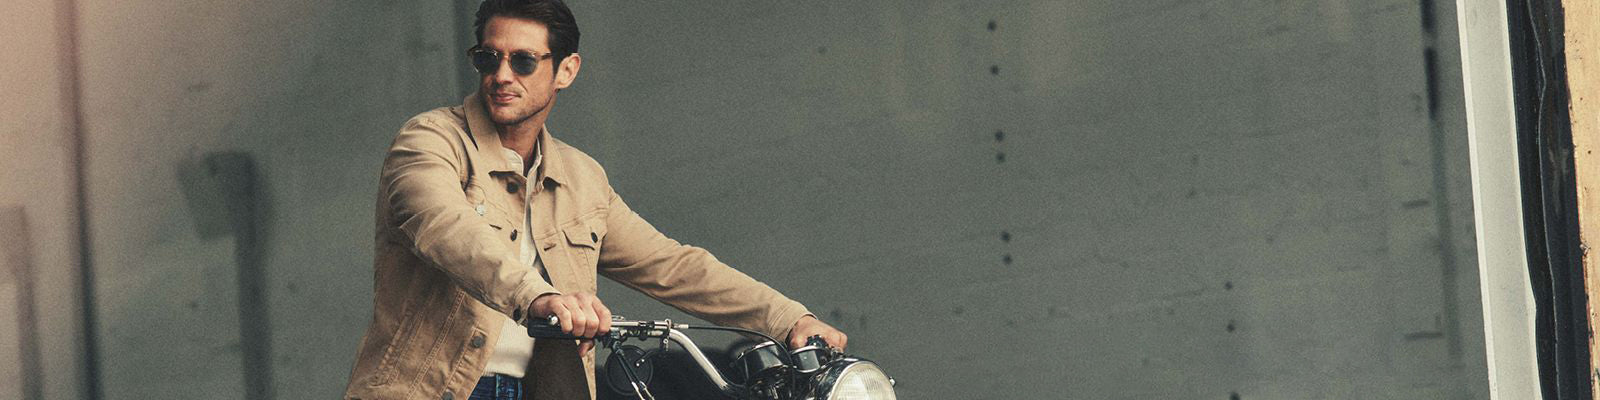 Un homme sur une moto avec un jacket beige uni et des lunettes fumées